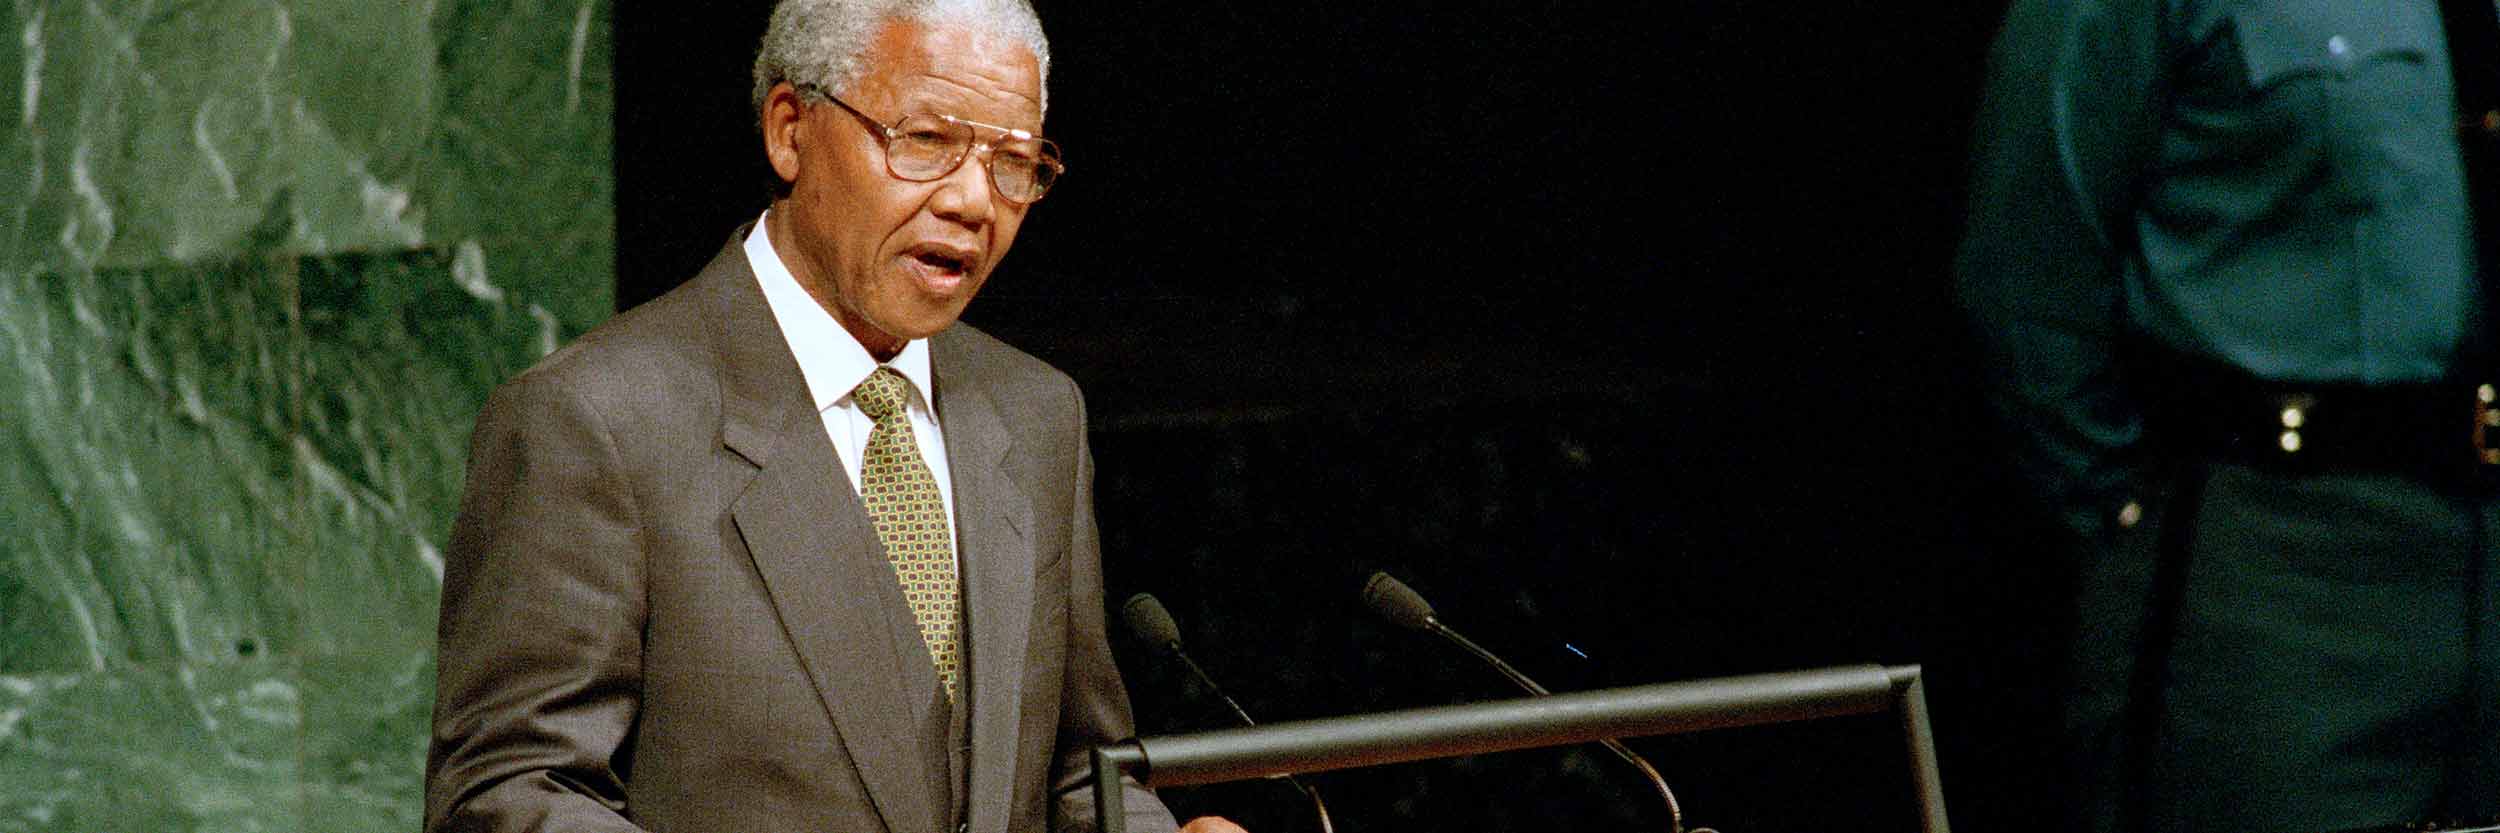 Nelson Mandela, ancien Président de l'Afrique du Sud, prononce un discours devant la 49ème session de l'Assemblée générale en 1994.